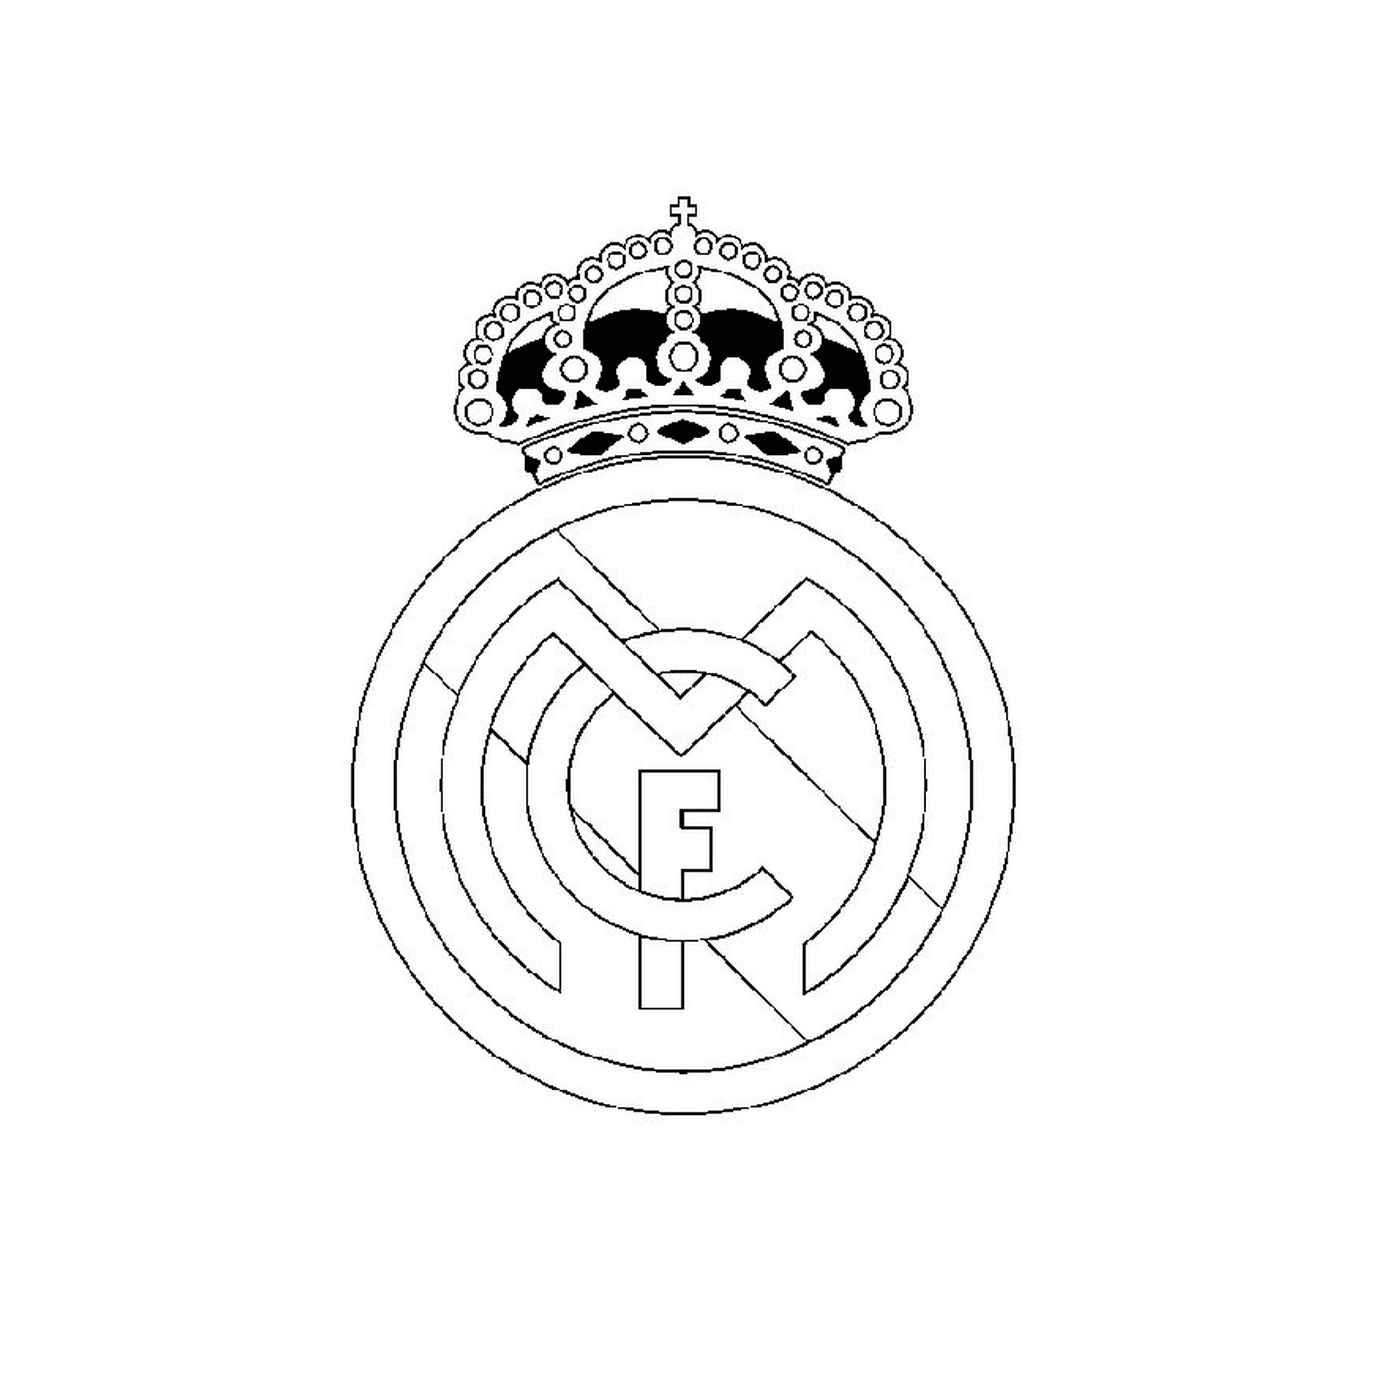  Logo del Real Madrid 